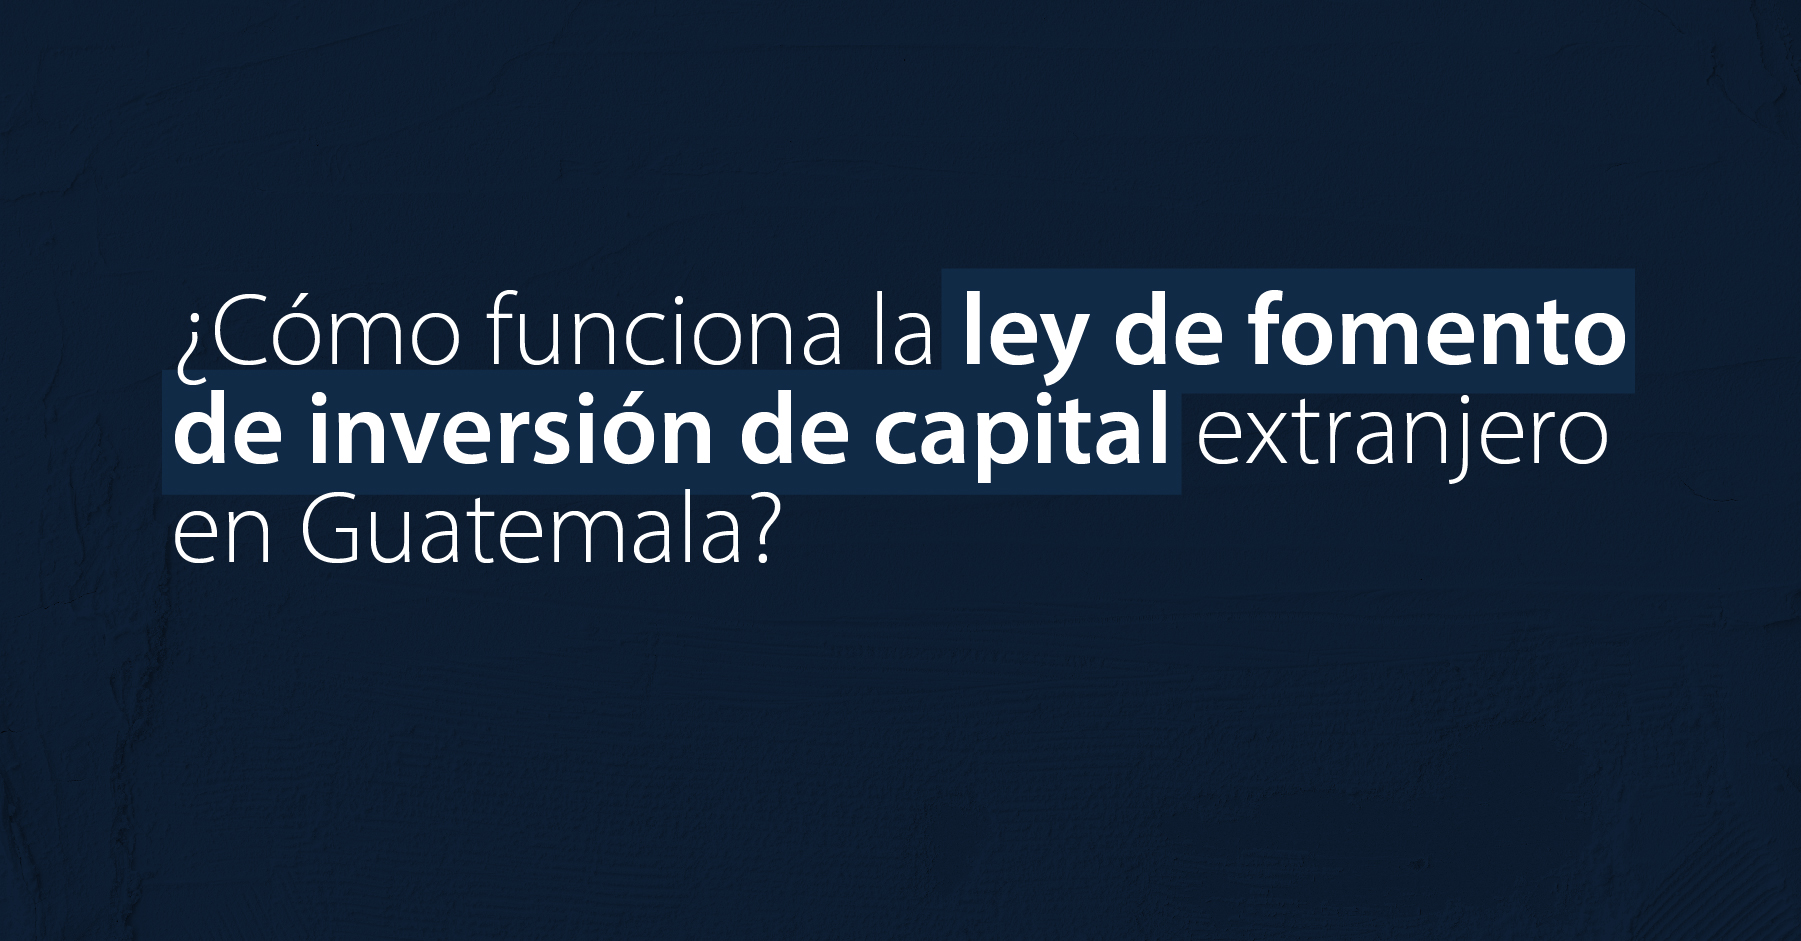 ¿Cómo funciona la ley de fomento de inversión de capital extranjero en Guatemala?